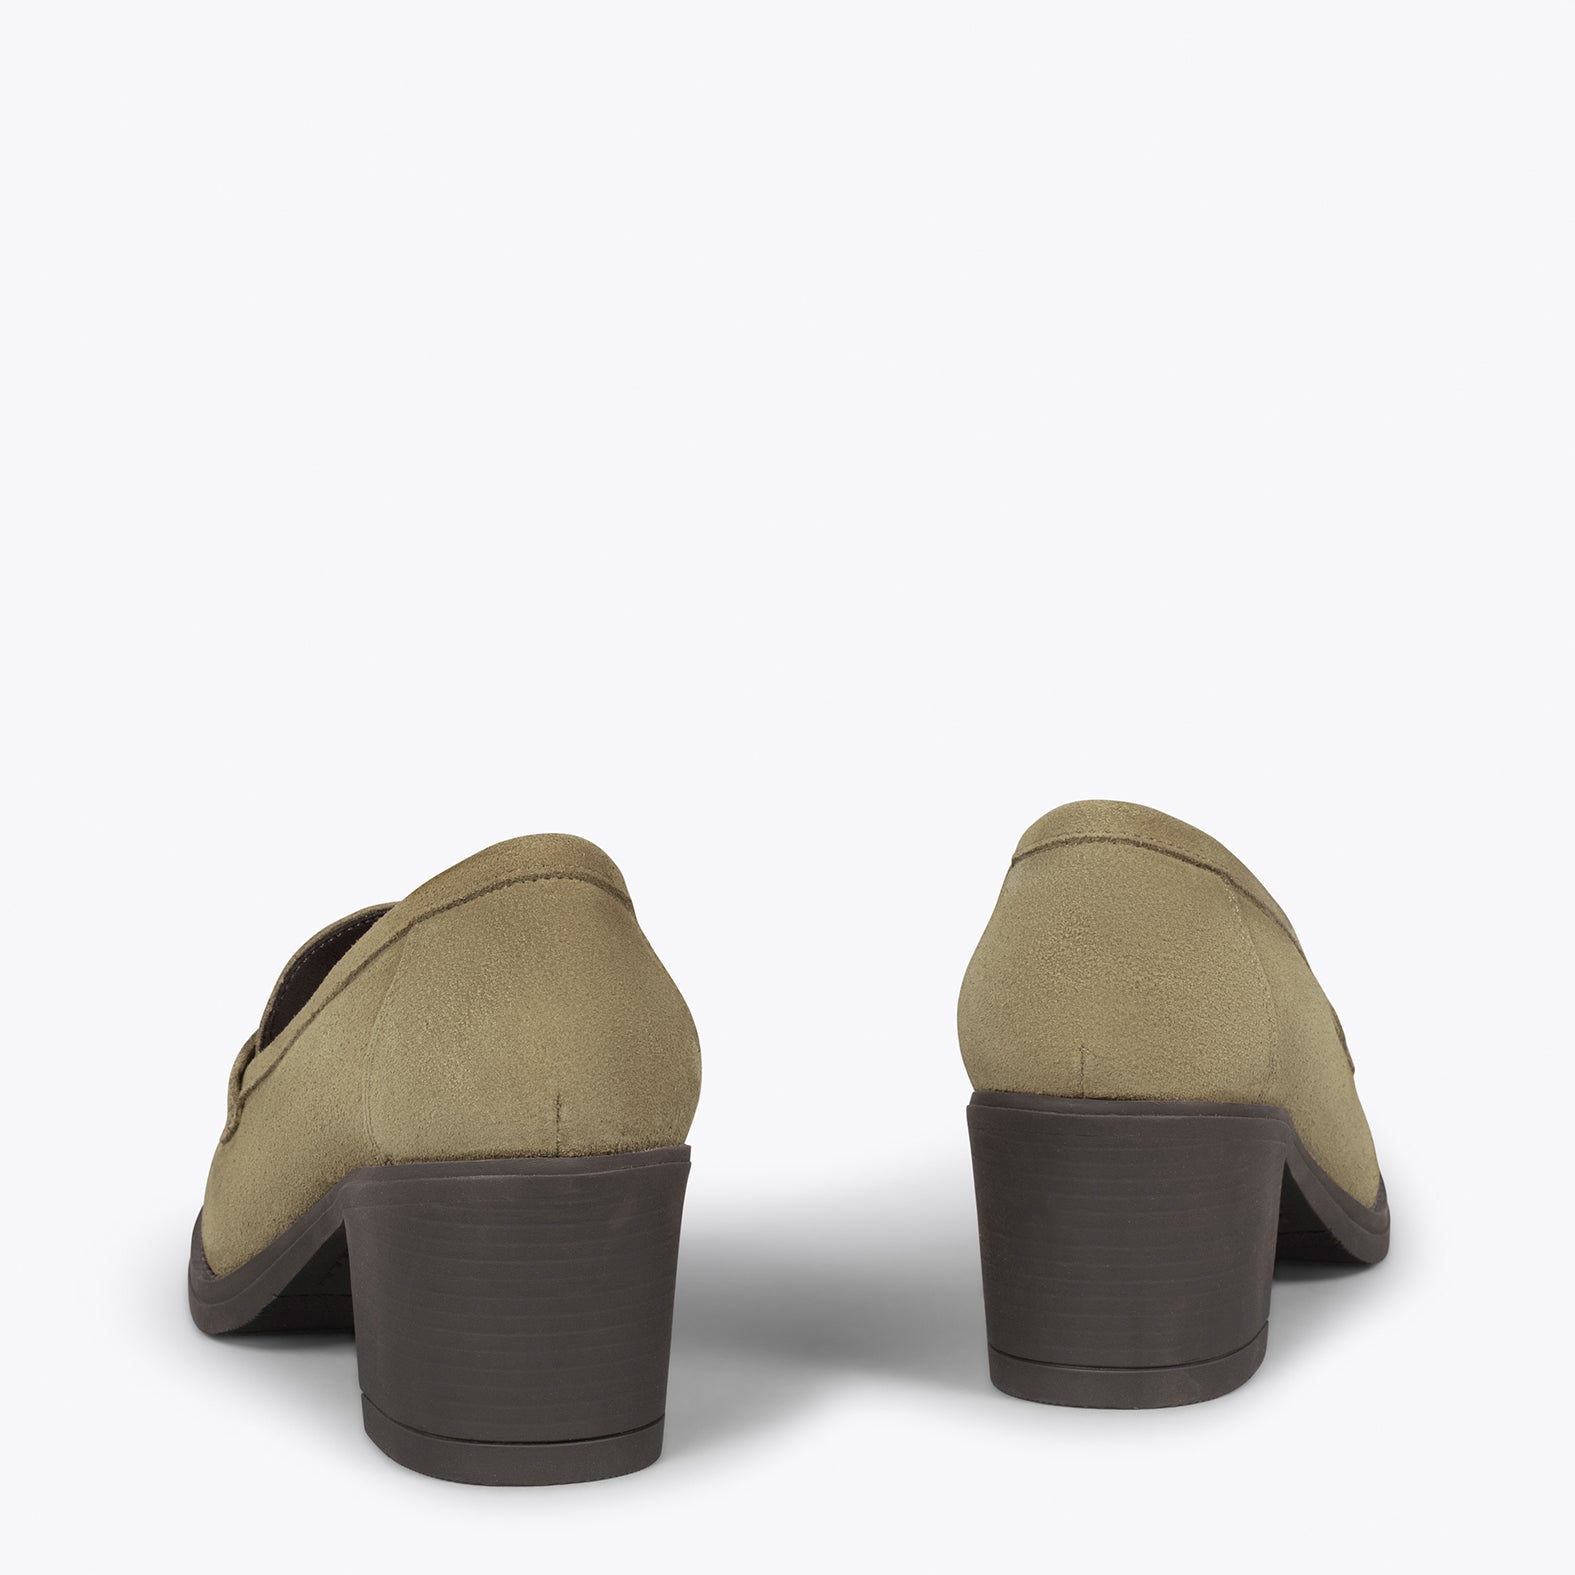 MOKKA – KHAKI suede leather mid heel moccasin